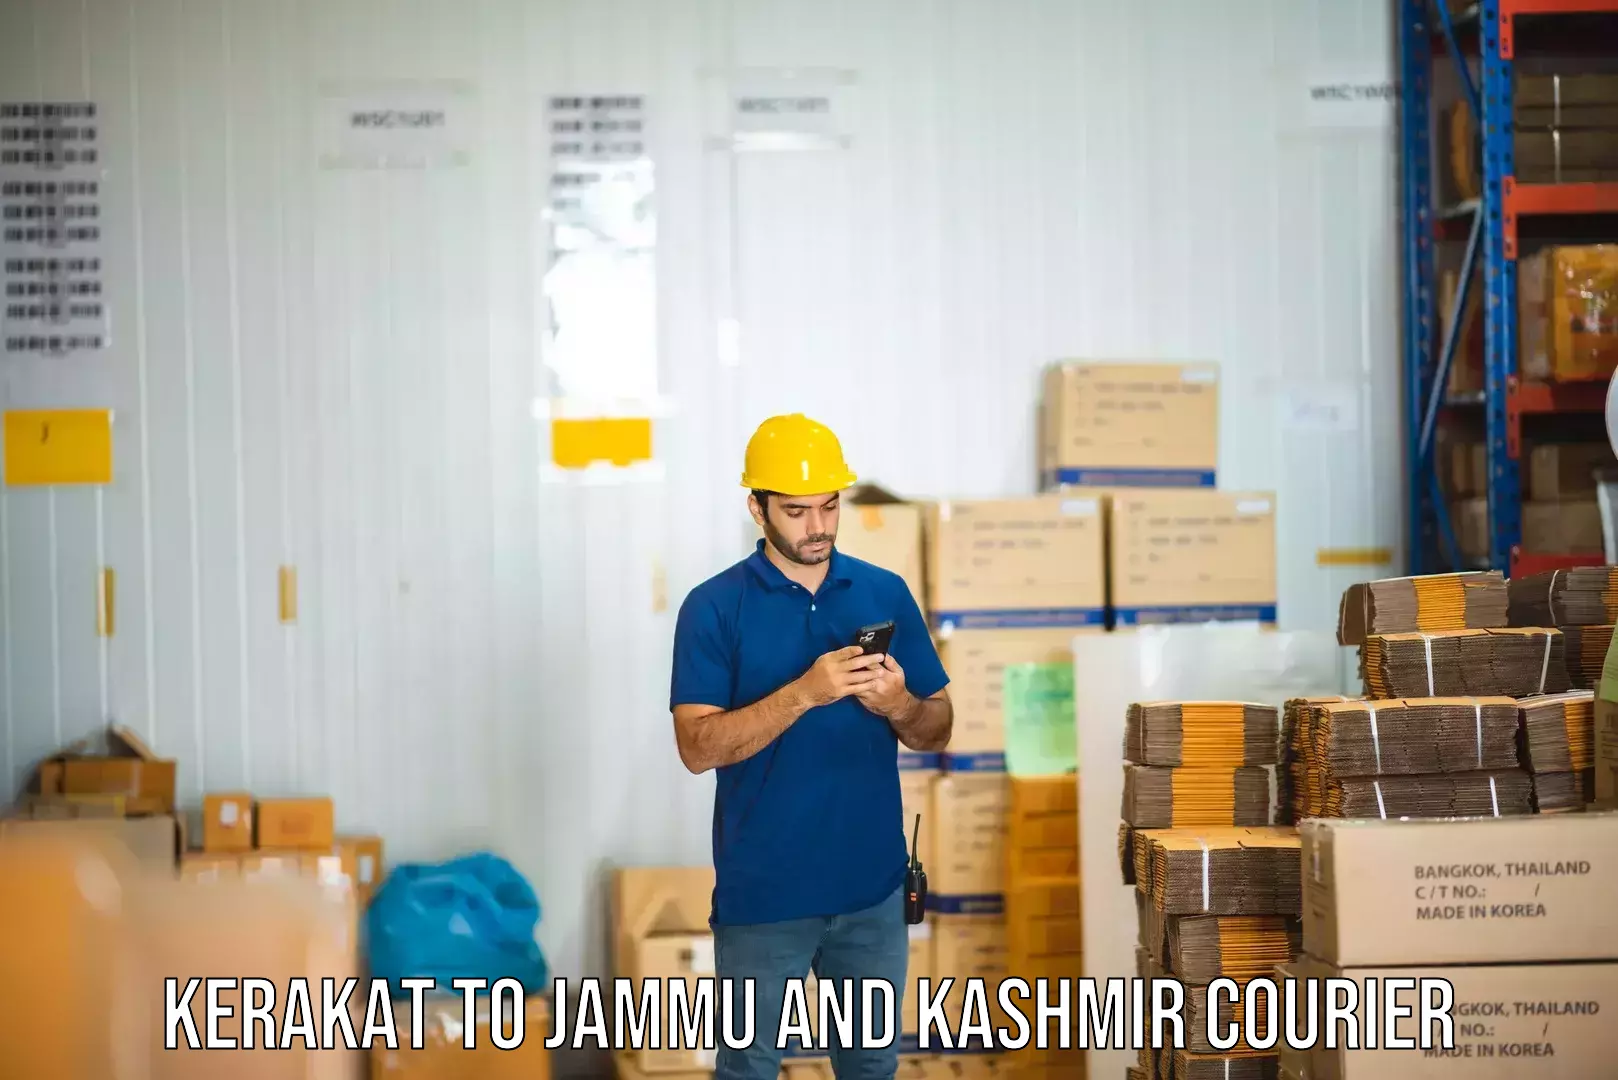 Return courier service Kerakat to Jammu and Kashmir